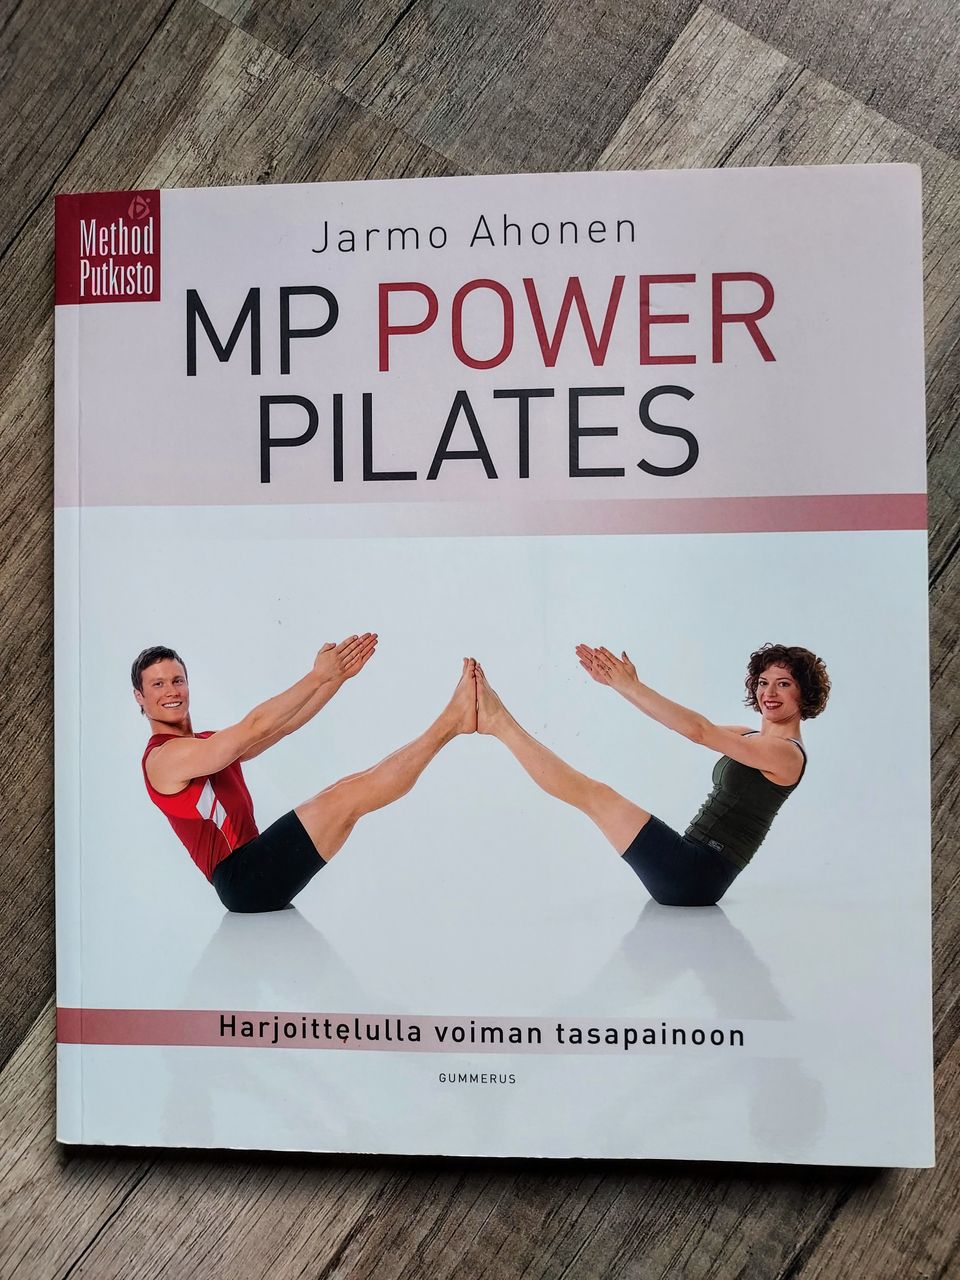 MP Power Pilates – Harjoittelulla voiman tasapainoon